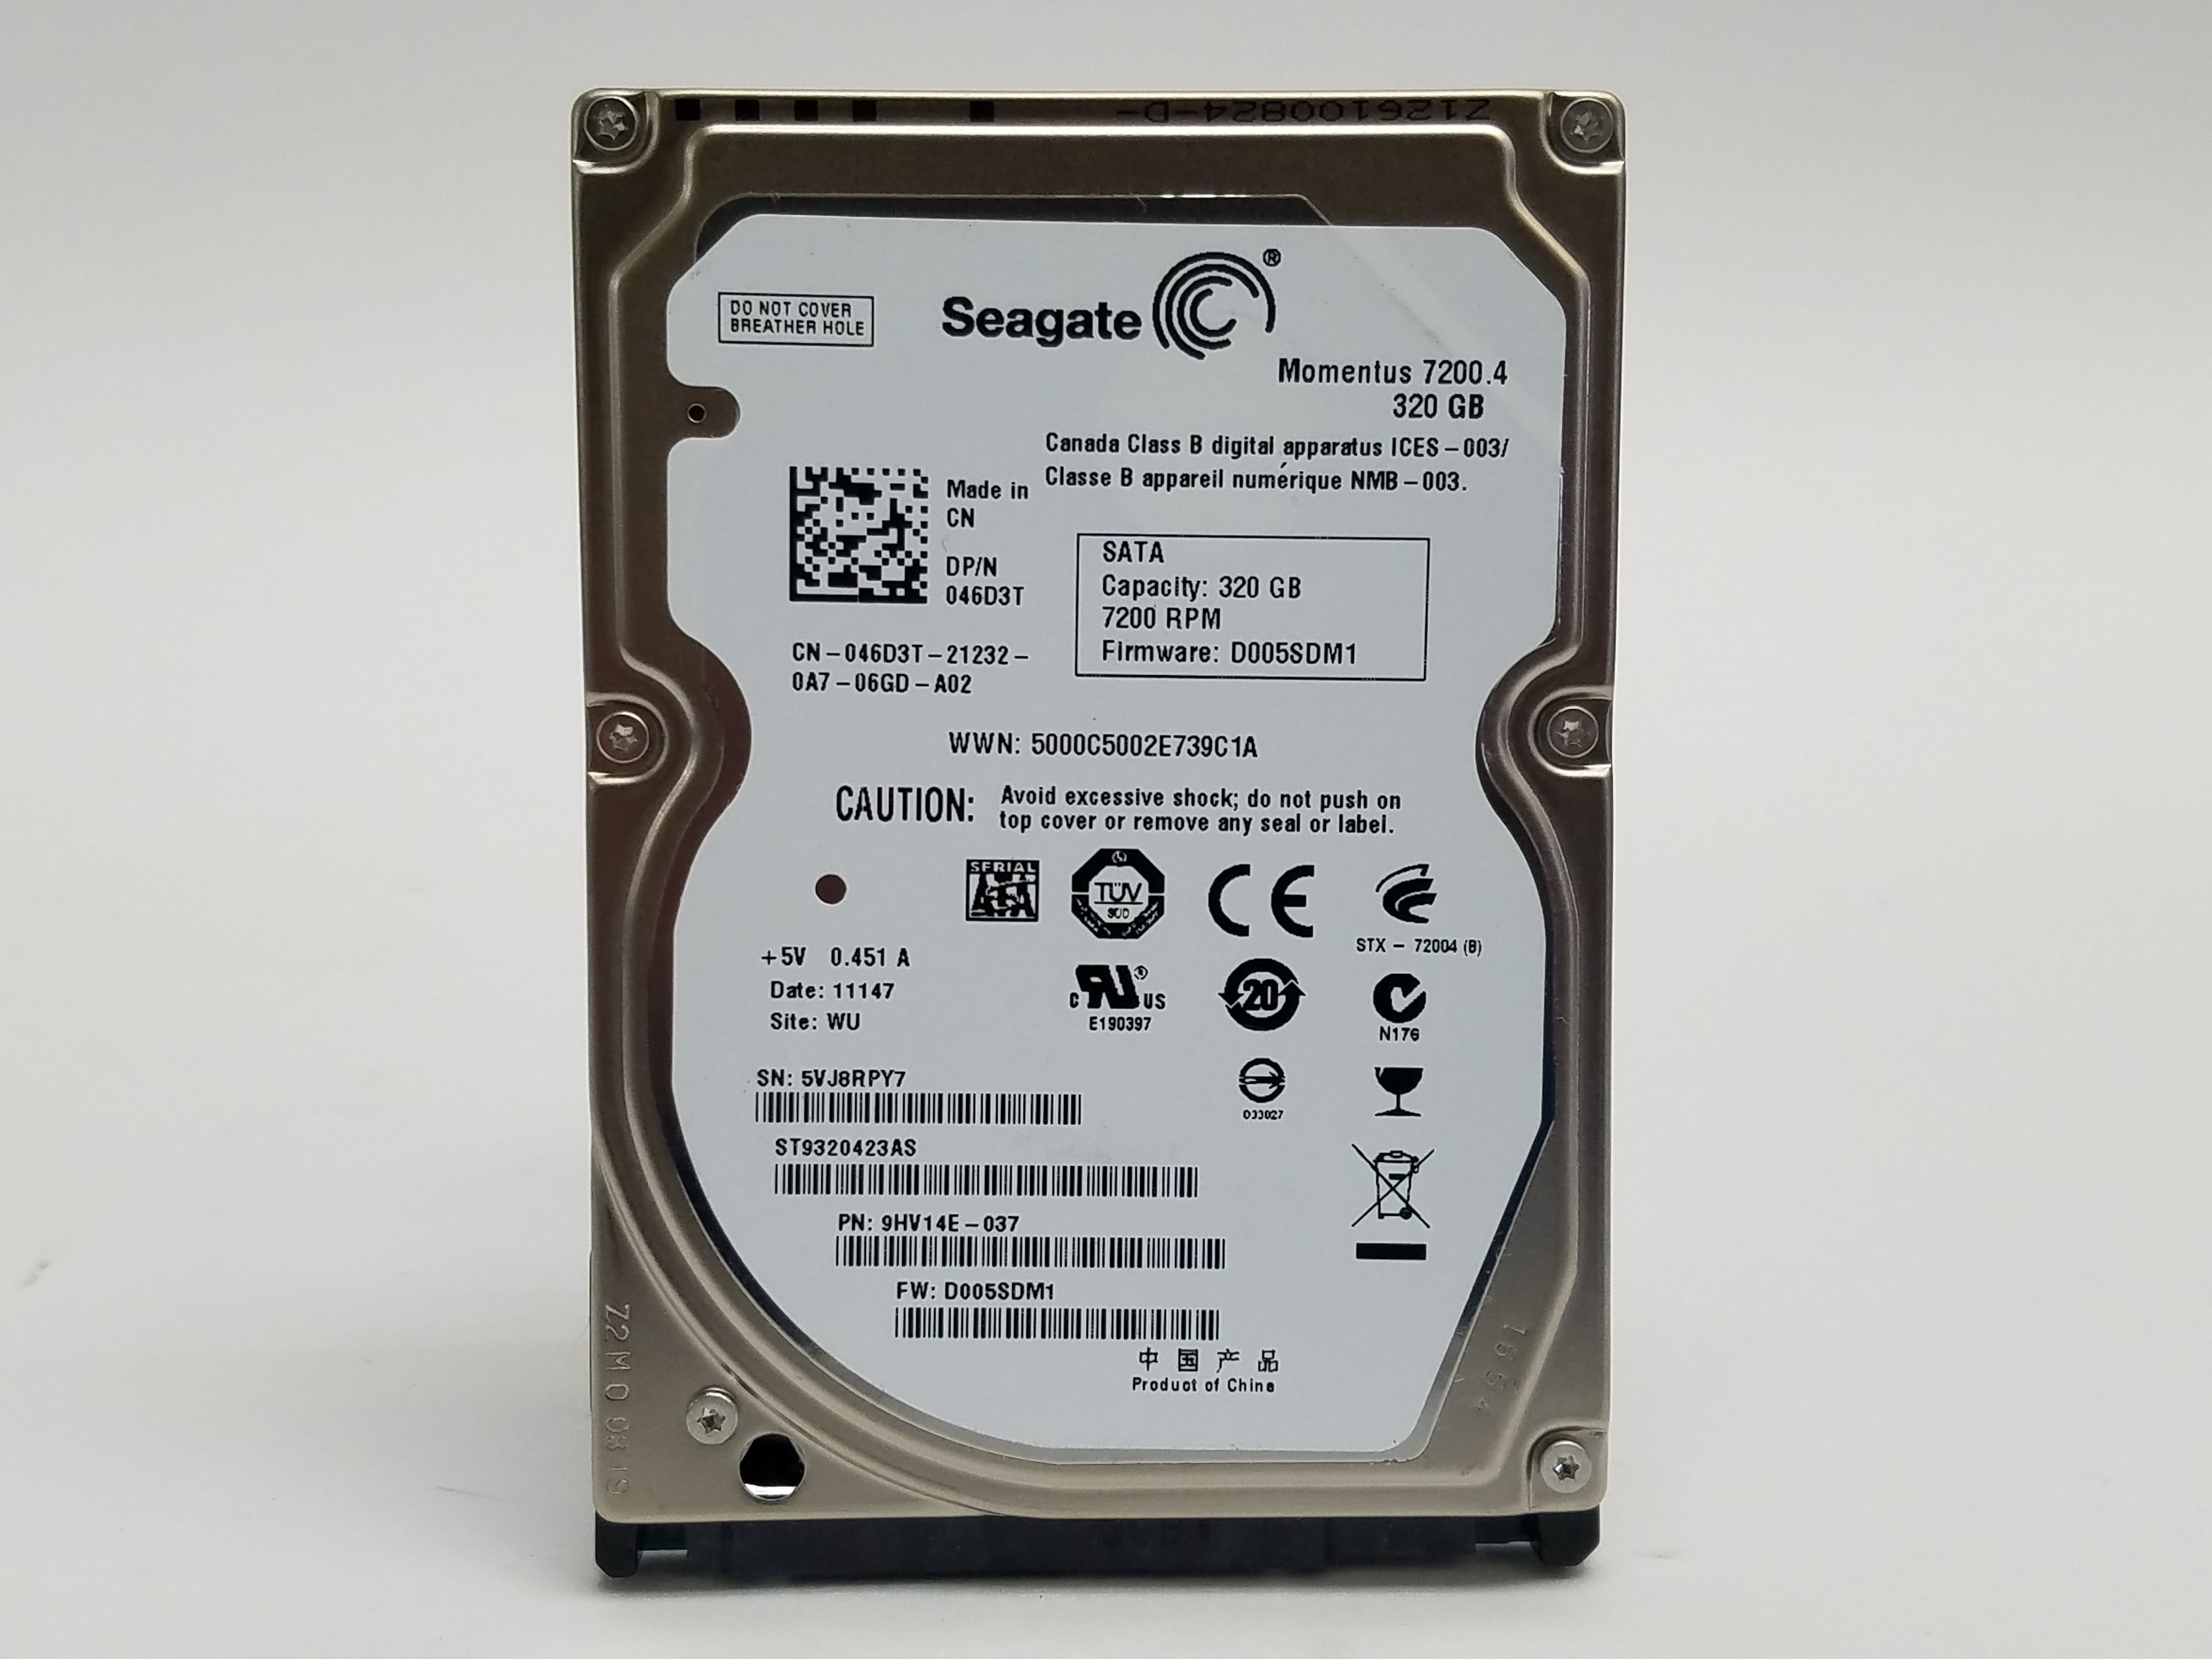 Refurbished Seagate Momentus 7200.4 ST9320423AS 320GB 2.5" SATA II Laptop Hard Drive